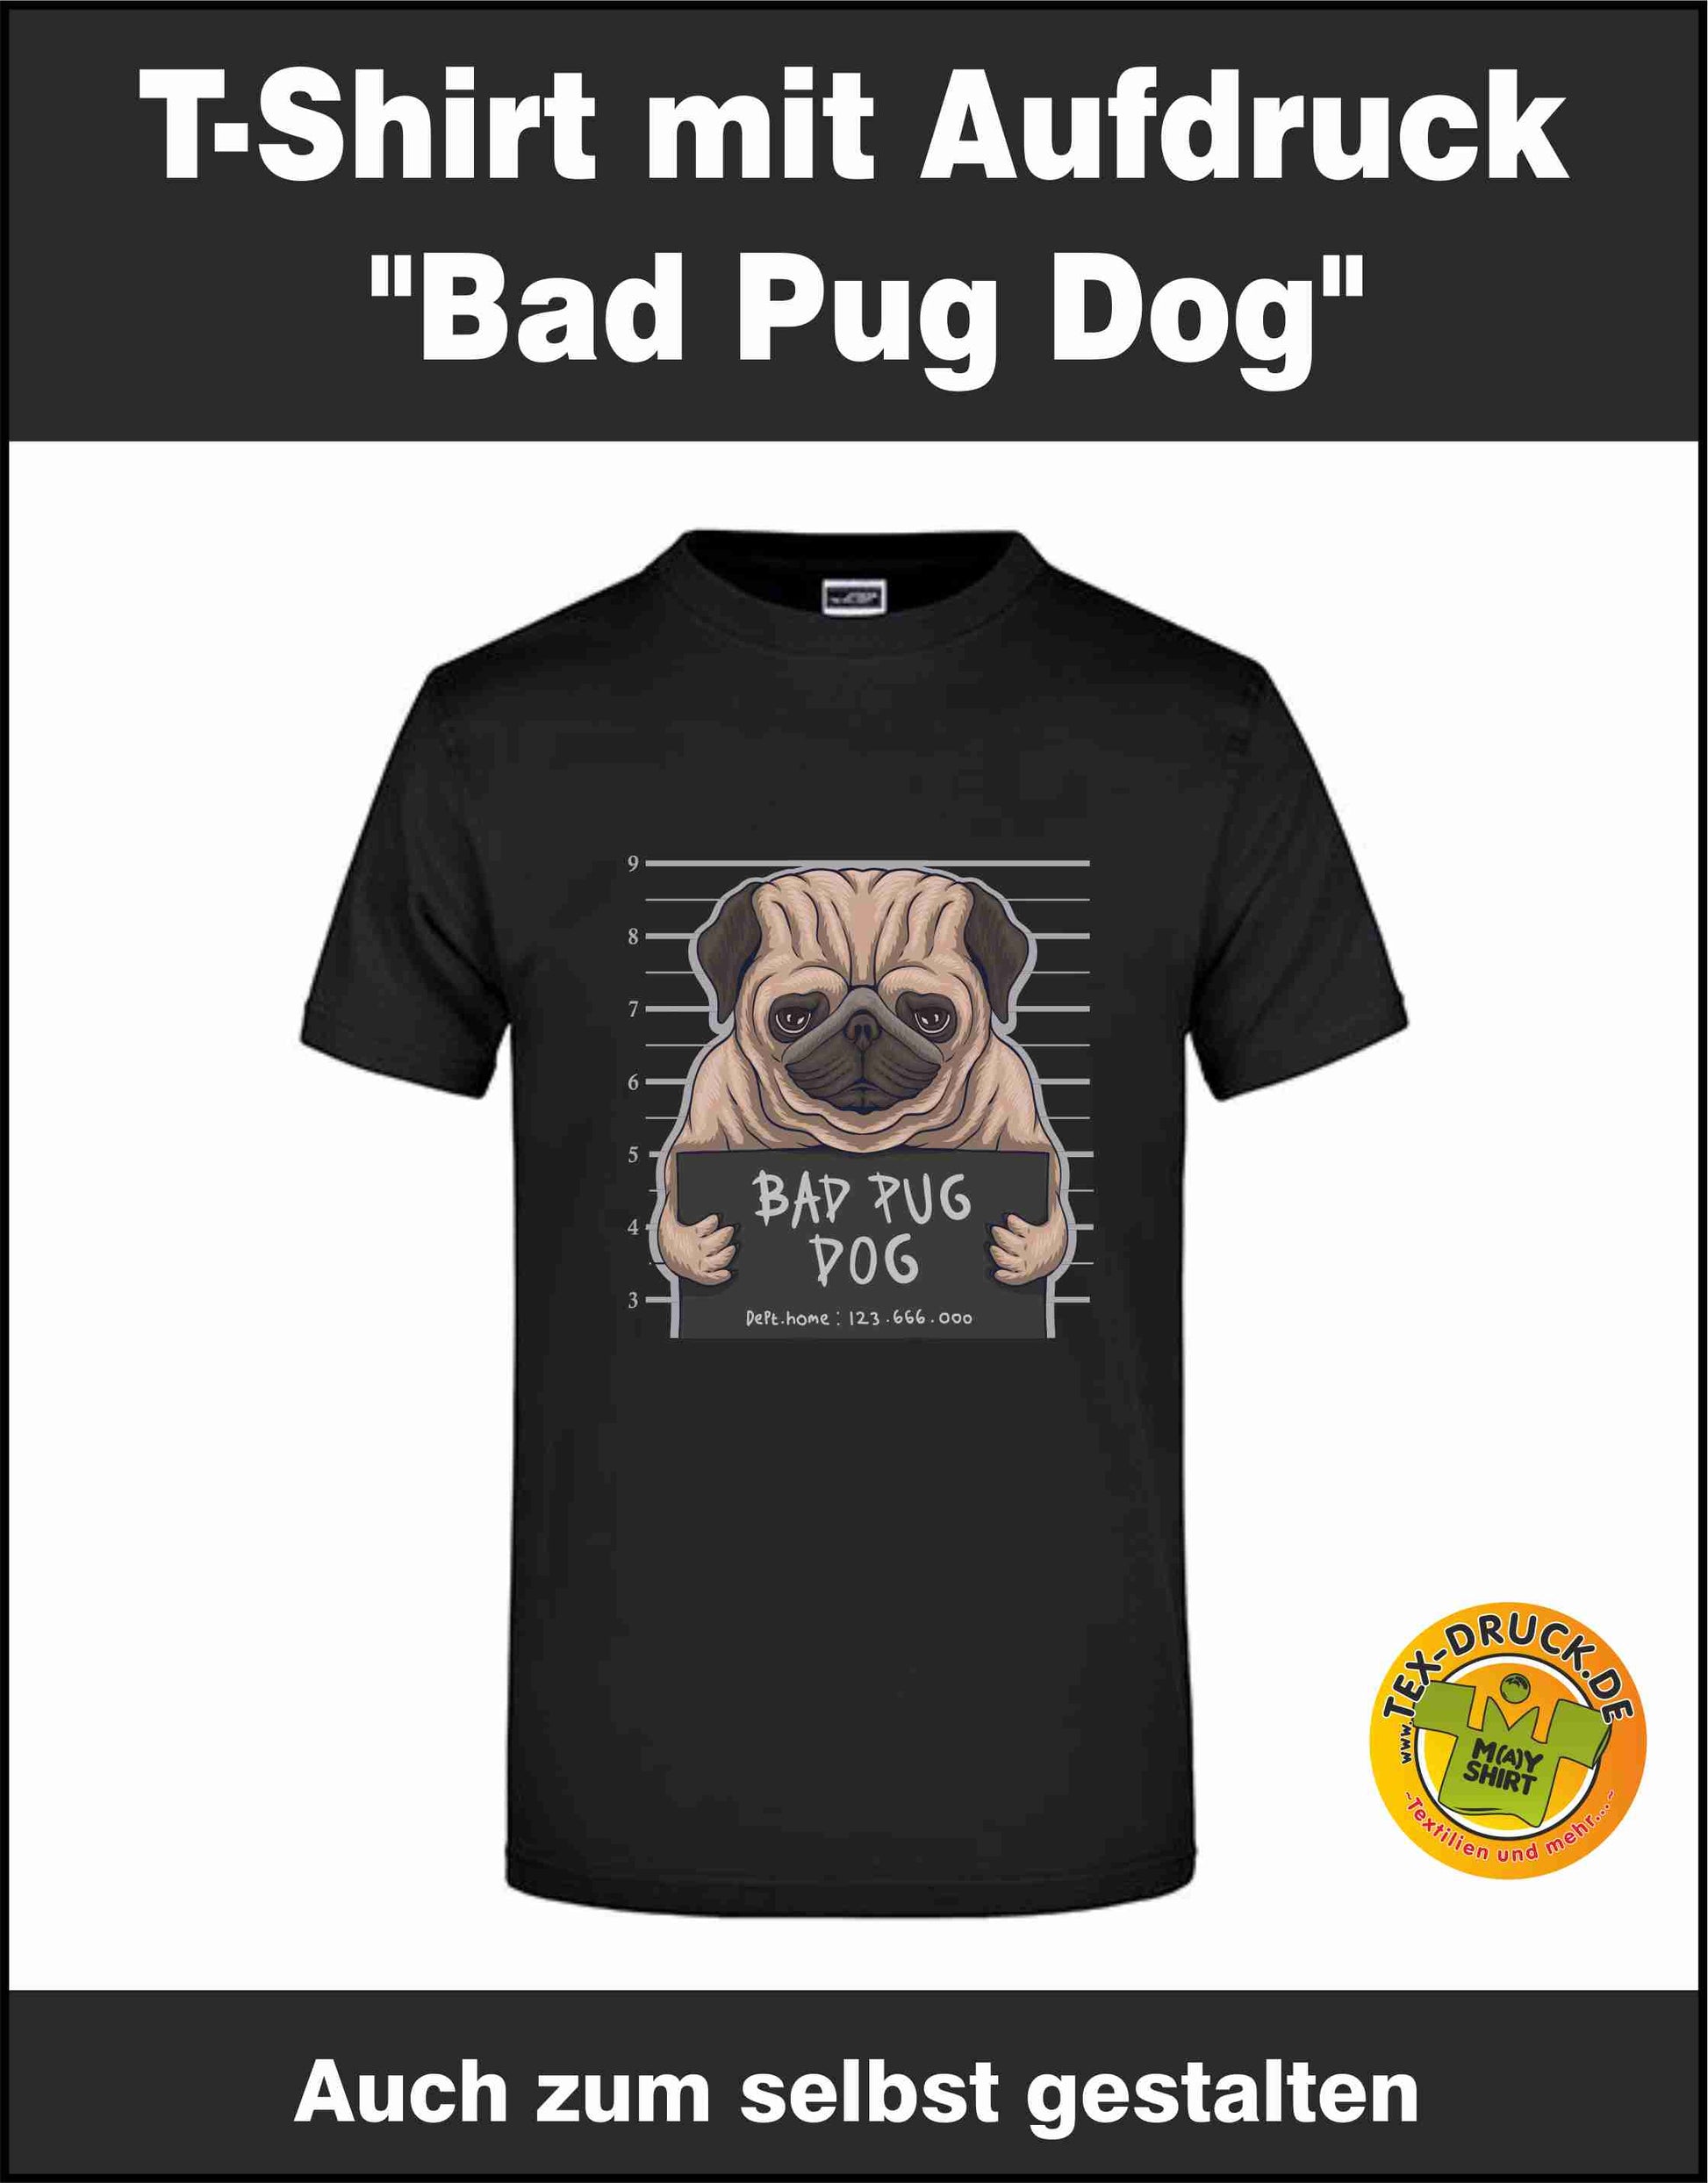 Bad Pug Dog T-Shirt auch zum selbst gestalten bei tex-druck.de